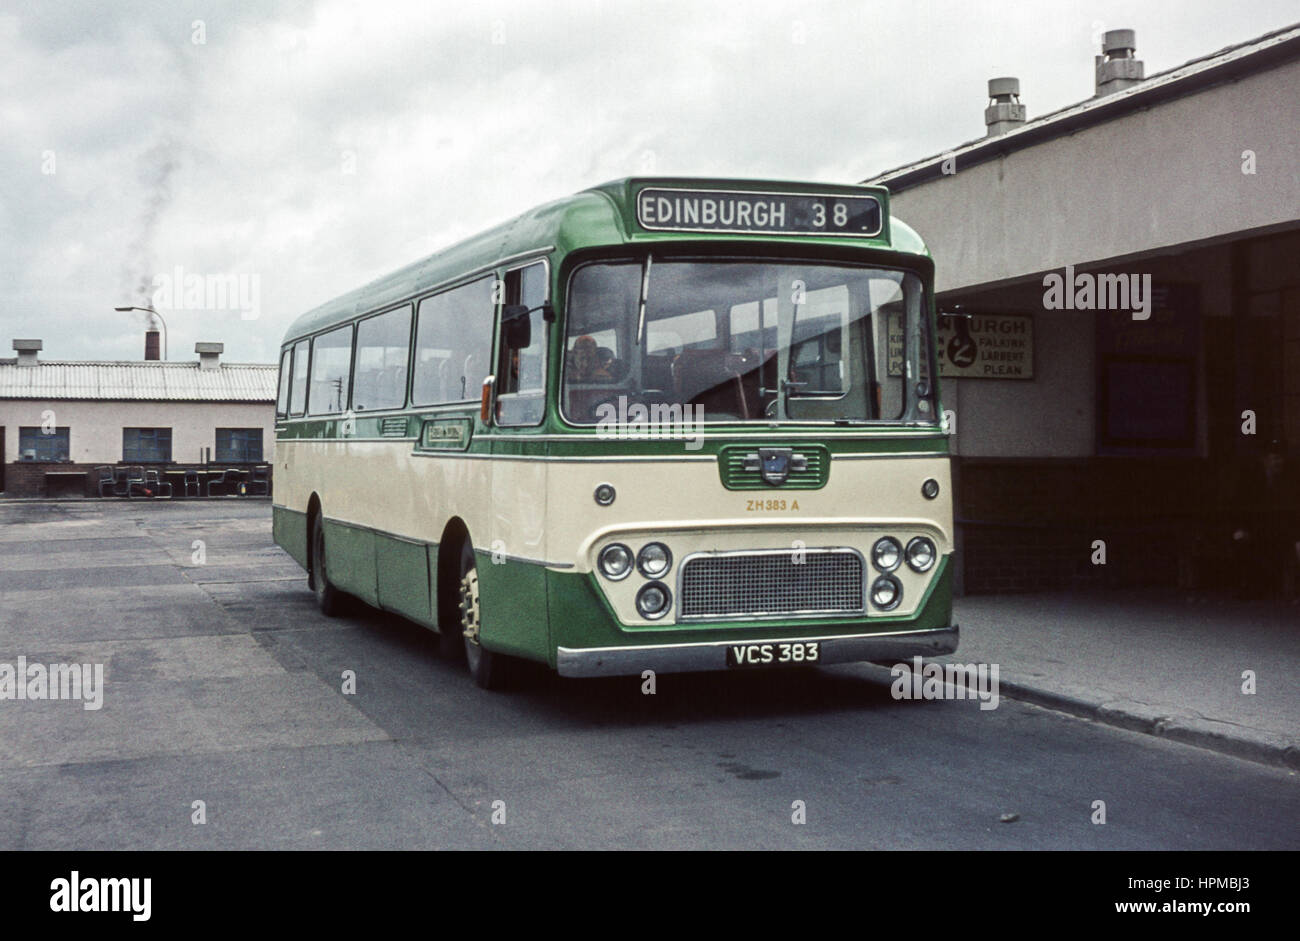 Escocia, Reino Unido - 1973: Vintage imagen del bus. SMT occidental Leyland Leopard operado por Escocia Oriental ZH 383 una VCS (número de registro 383). Foto de stock